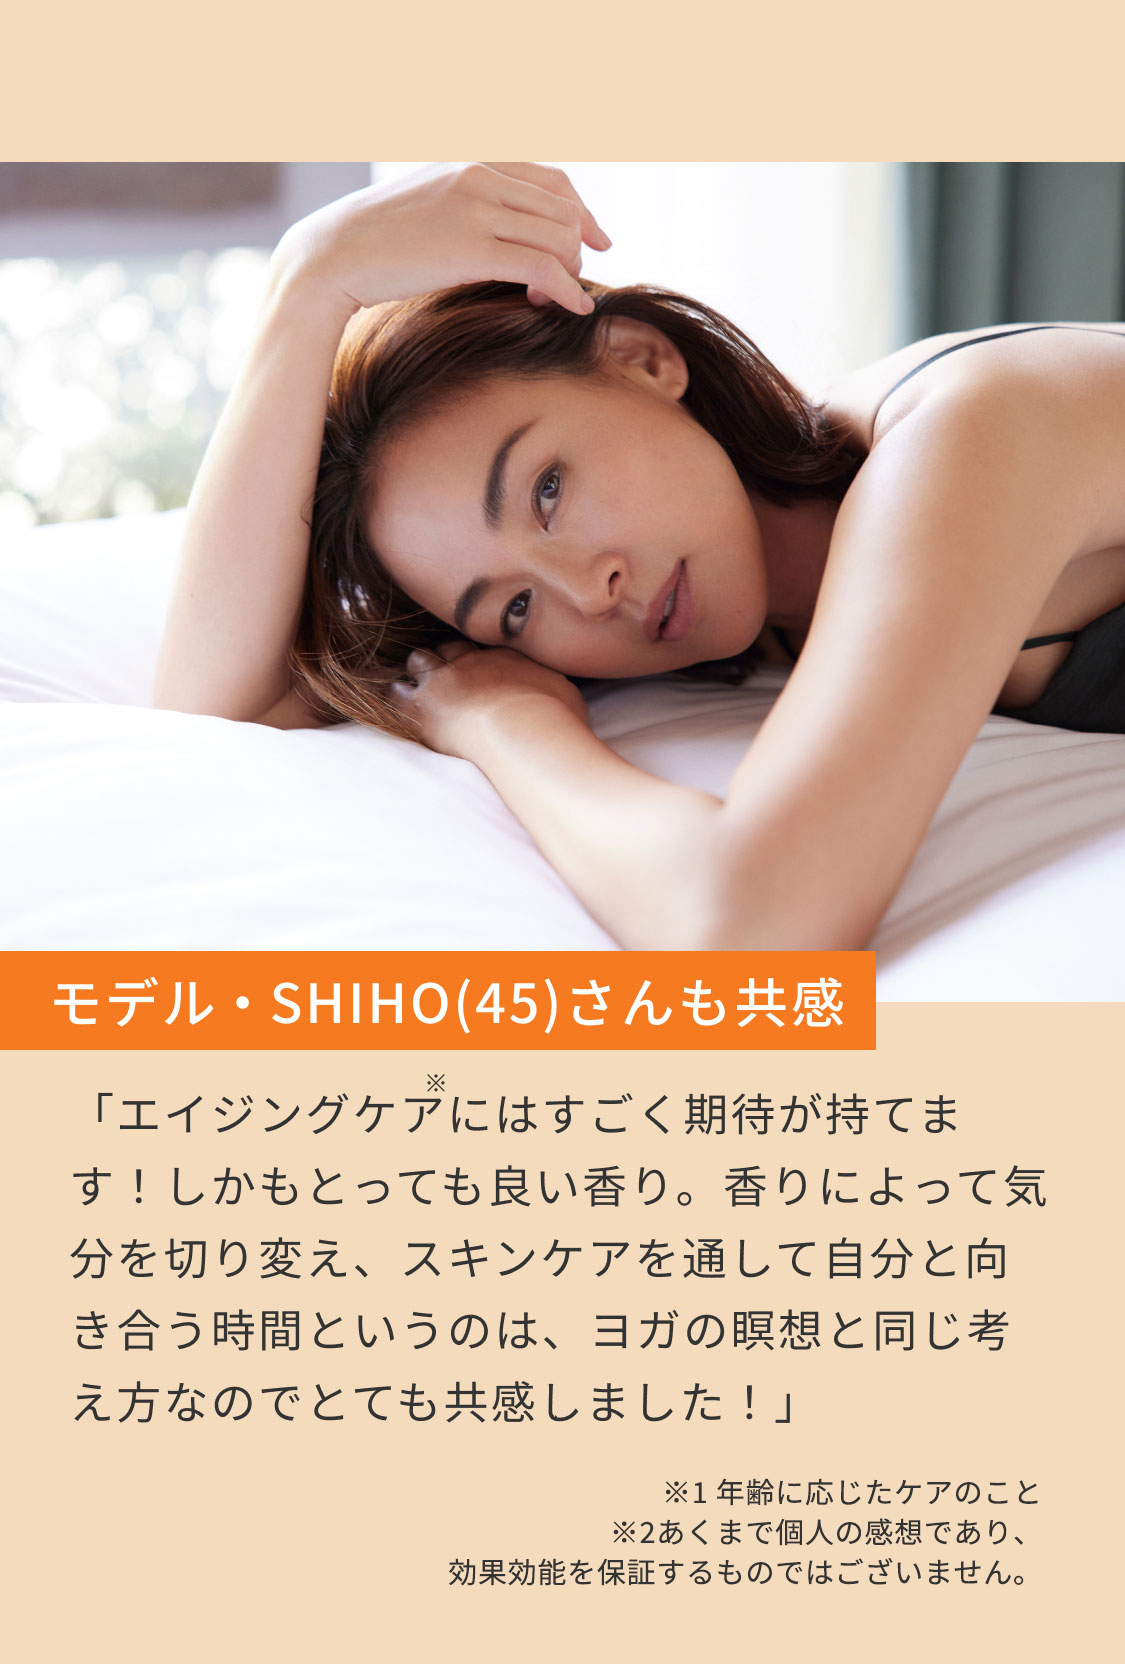 モデル・SHIHO(43)さんも共感